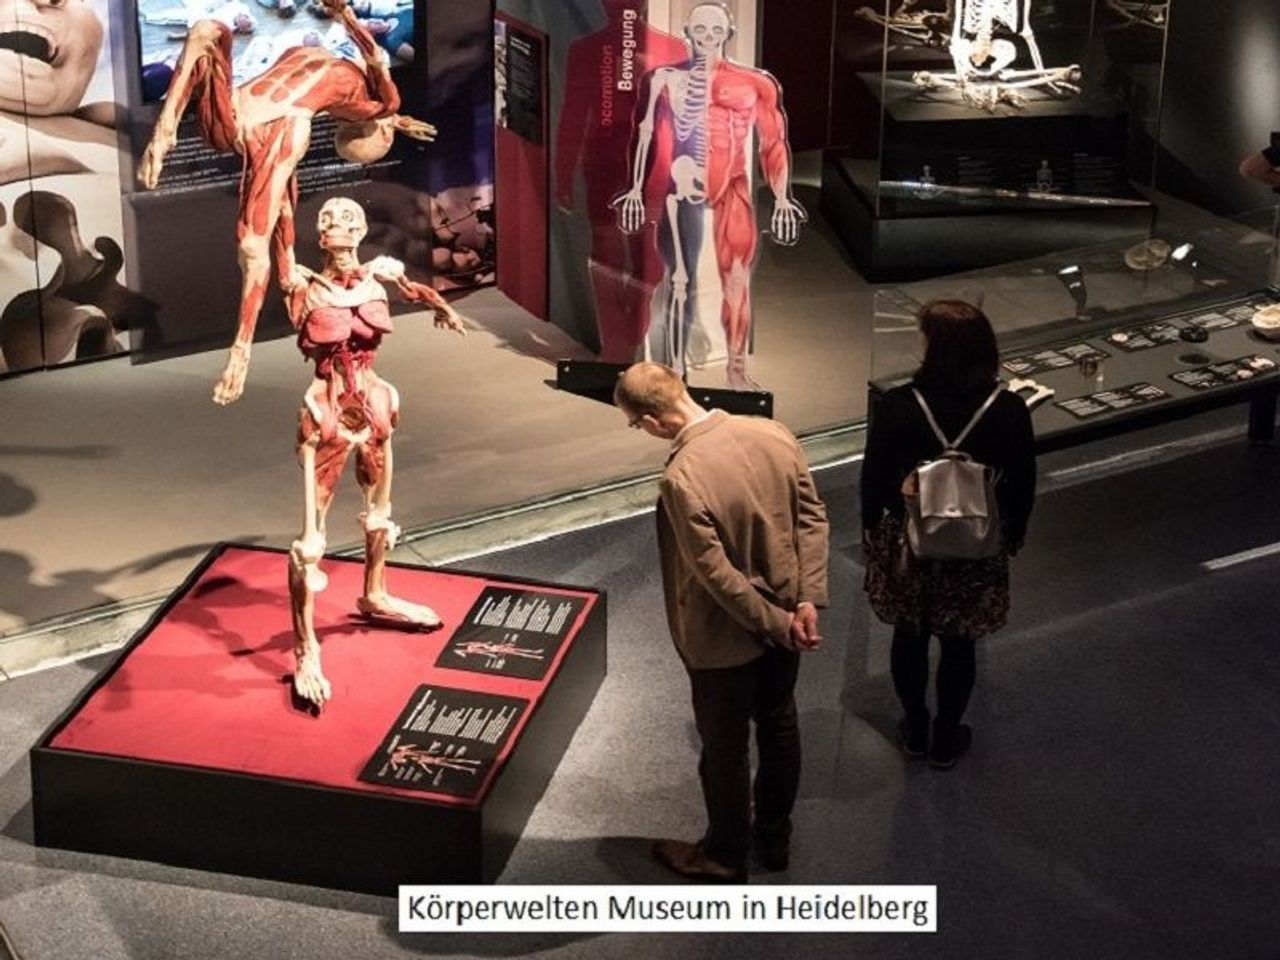 Kurz-mal Heidelberg mit Körperwelten Museum - 2 Tage